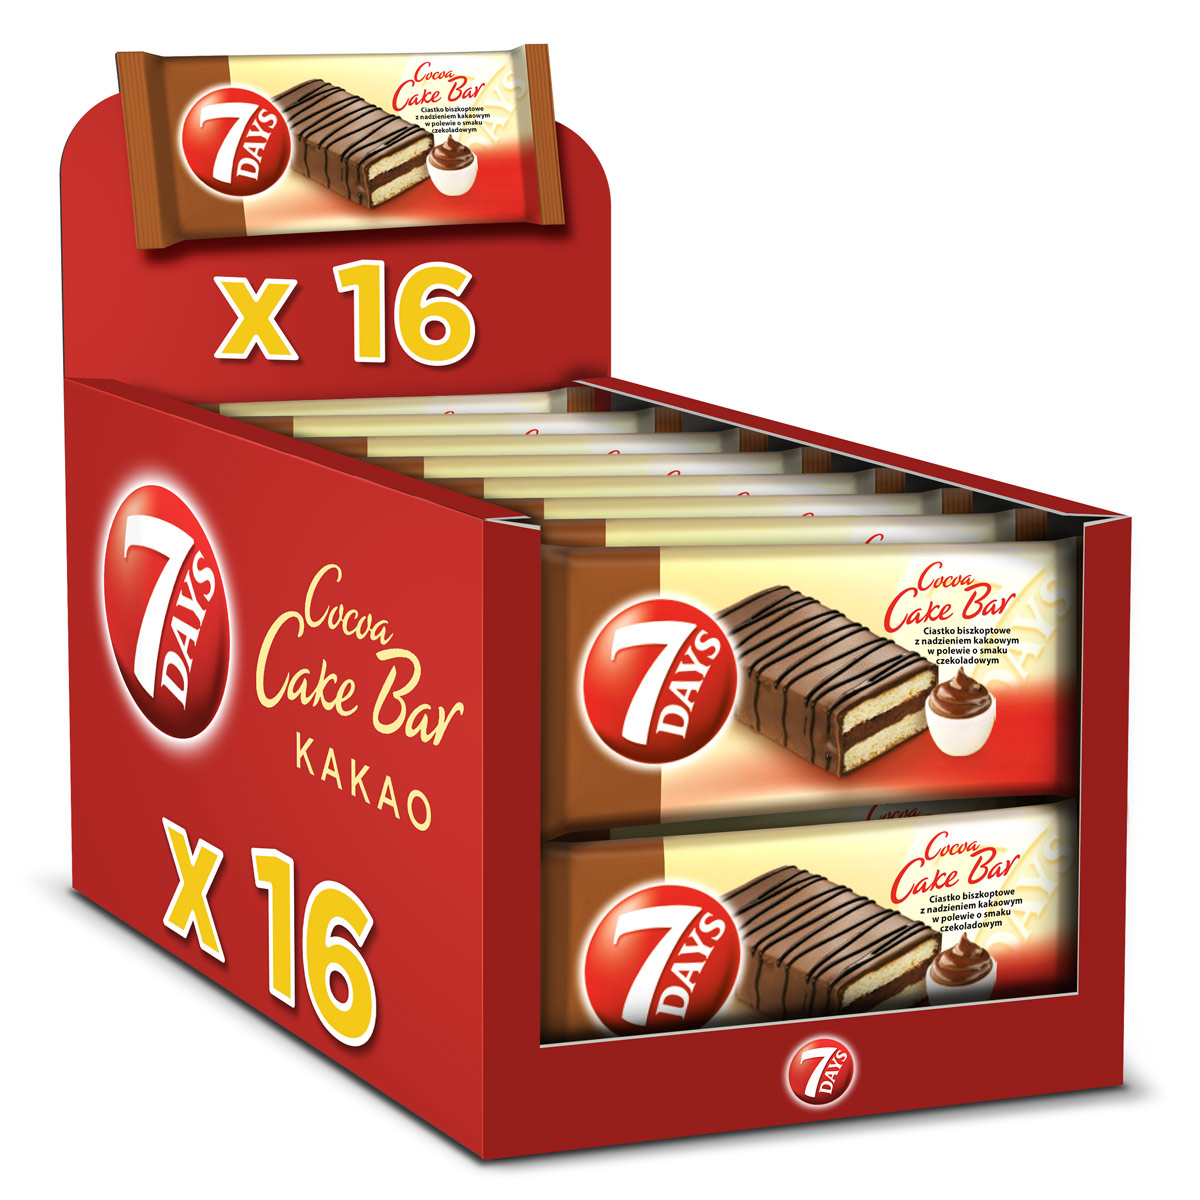 7 Days Cake Bar o smaku kakaowym 32g – 16szt